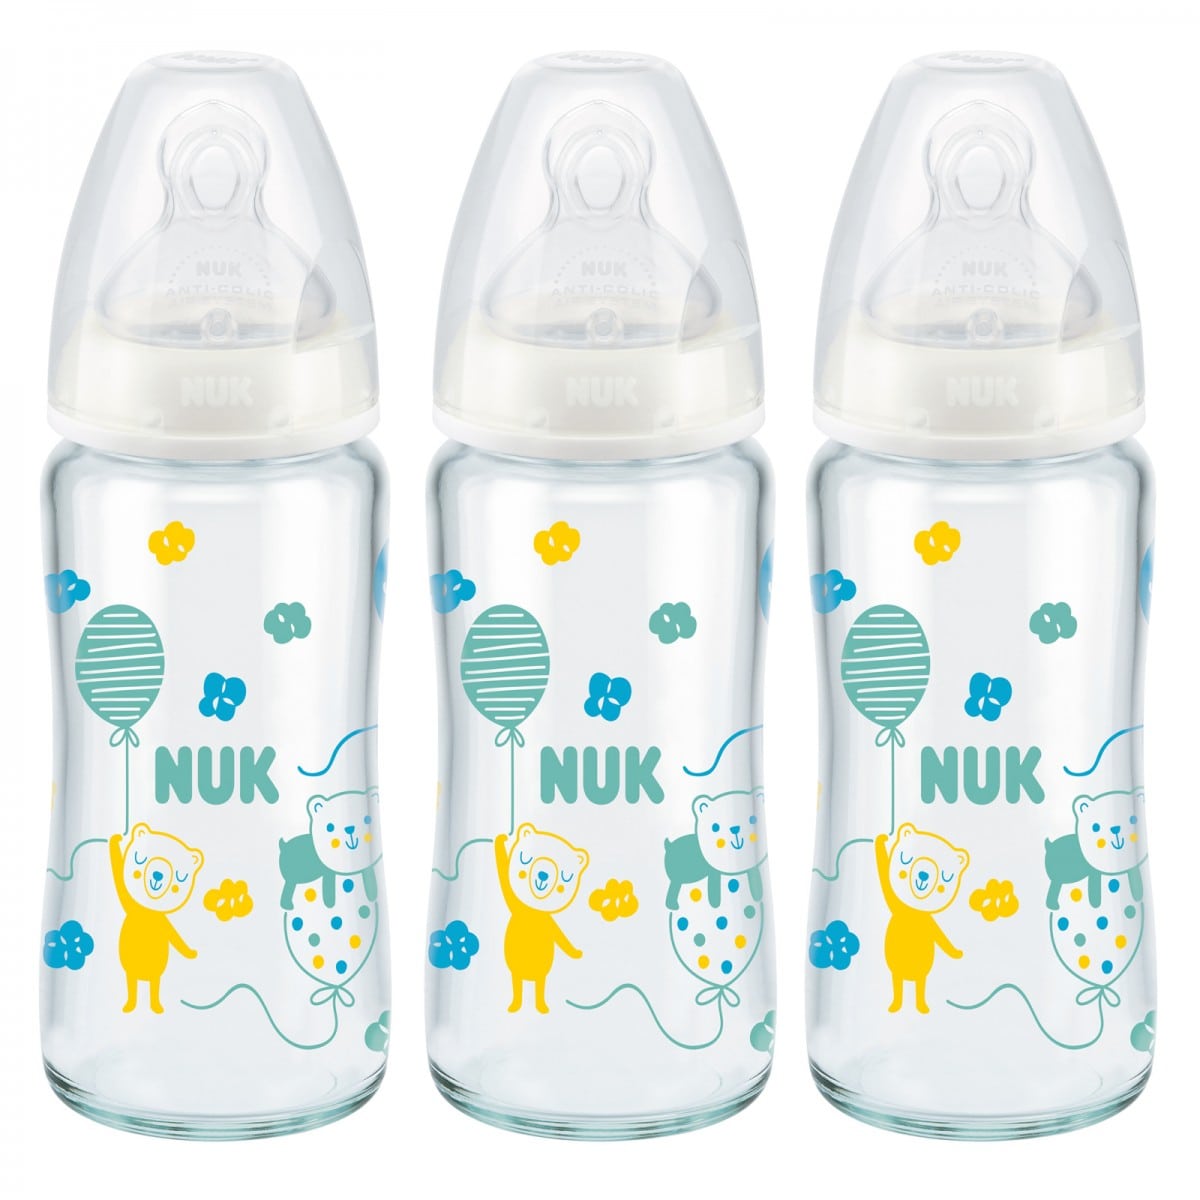 NUK biberon en verre First Choice+, 0 - 6 mois, Contrôle de température, Tétine en silicone, Valve anti-coliques, Sans BPA, 240 ml